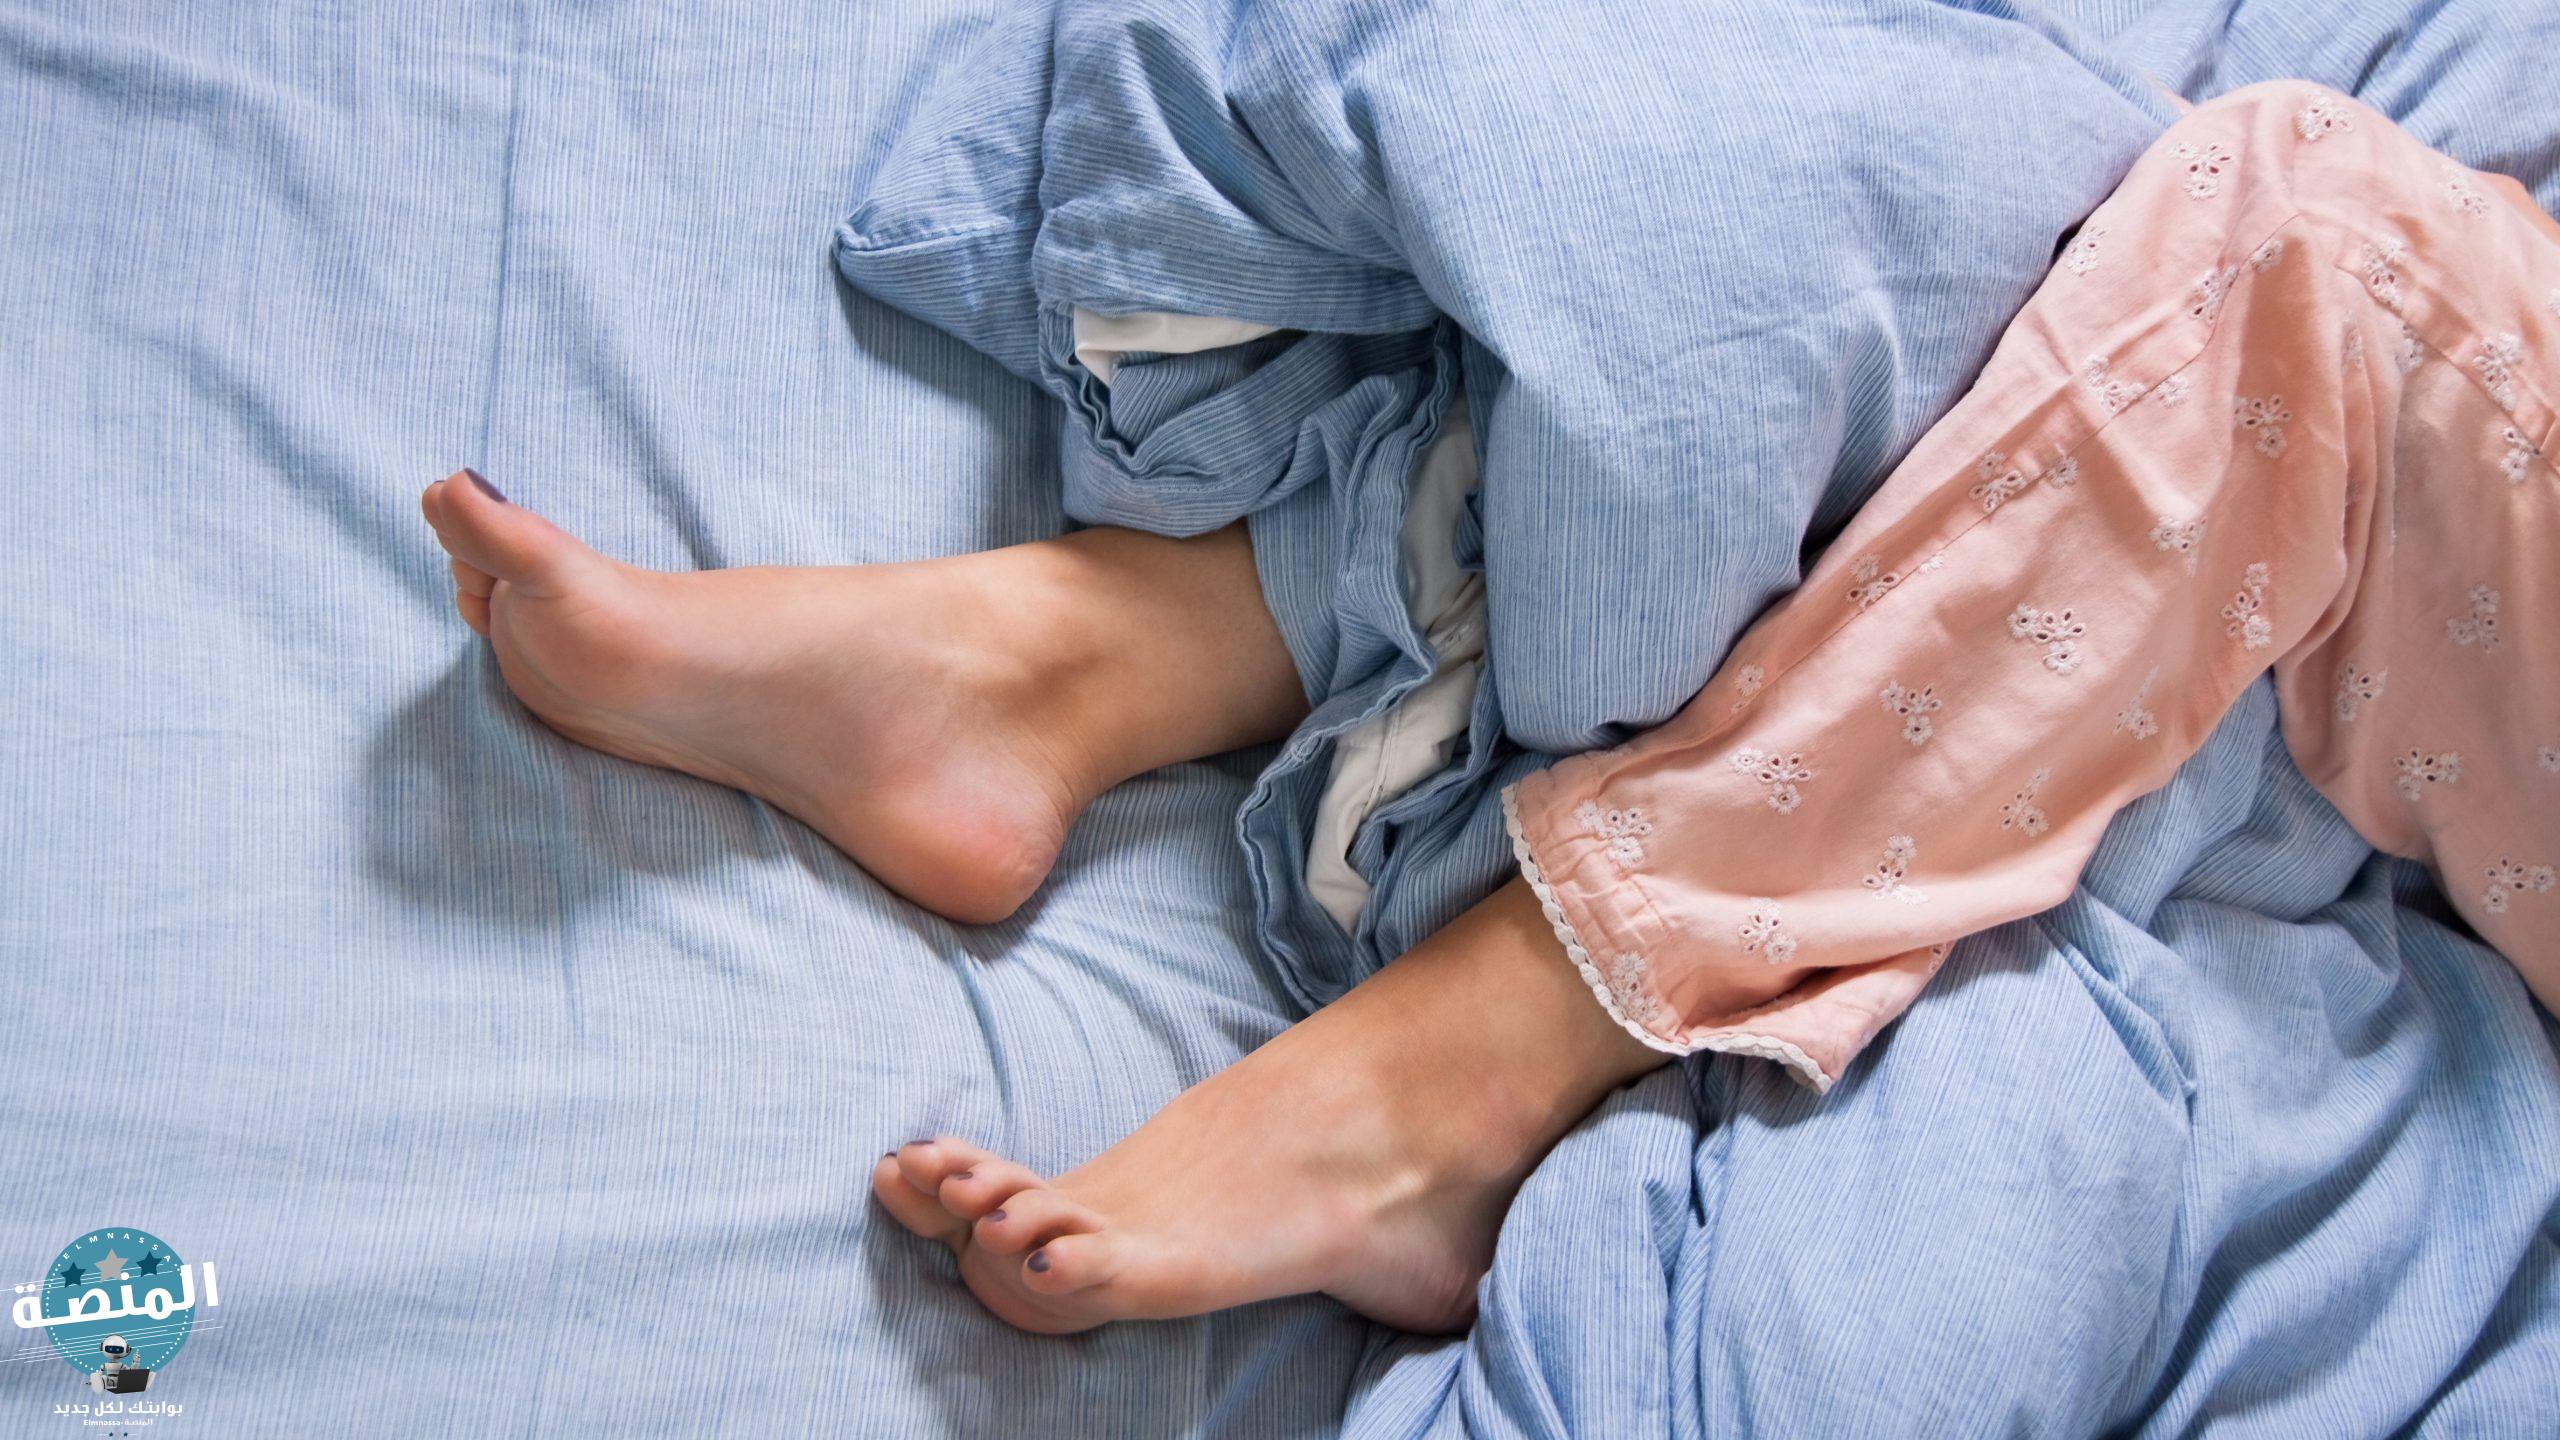 علاج ألم الساقين عند النوم